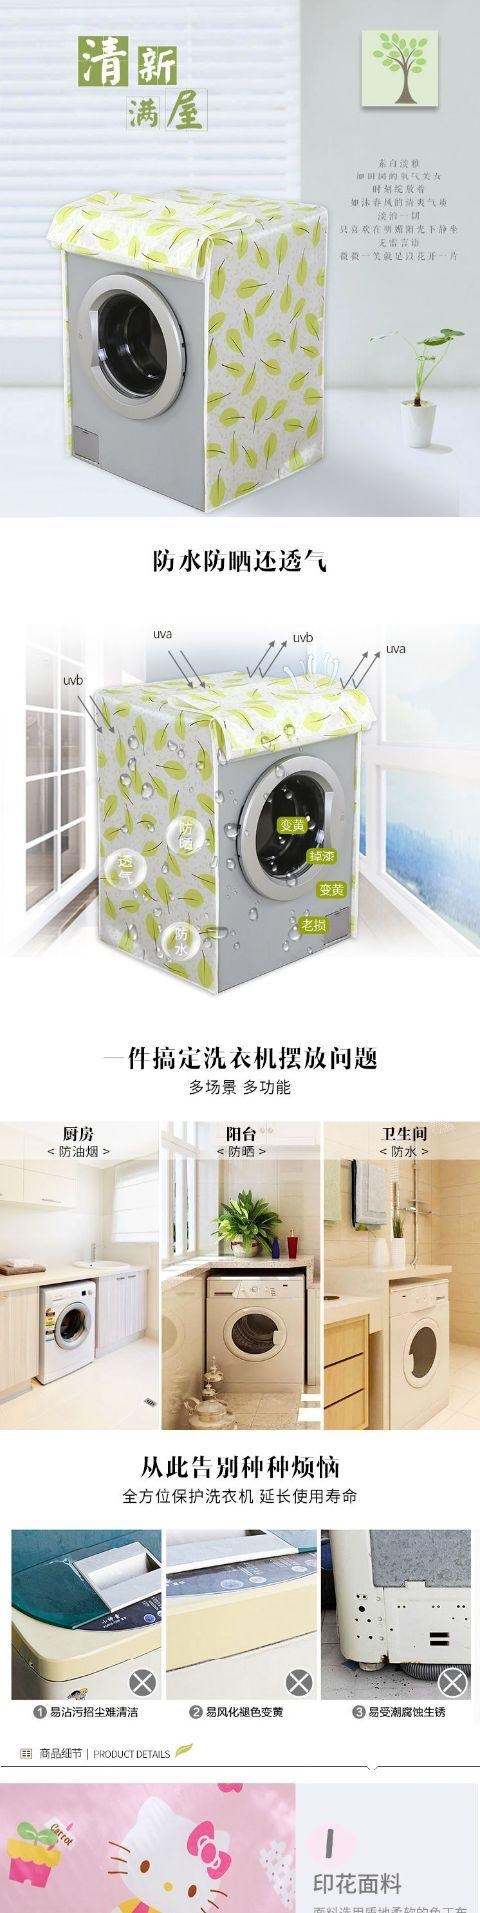 Vỏ máy giặt, chống thấm nước, chống nắng, chống bụi và chống lão hóa Vỏ đặc biệt dành cho máy giặt lồng giặt, vỏ bảo vệ hoàn toàn tự động và bền - Bảo vệ bụi